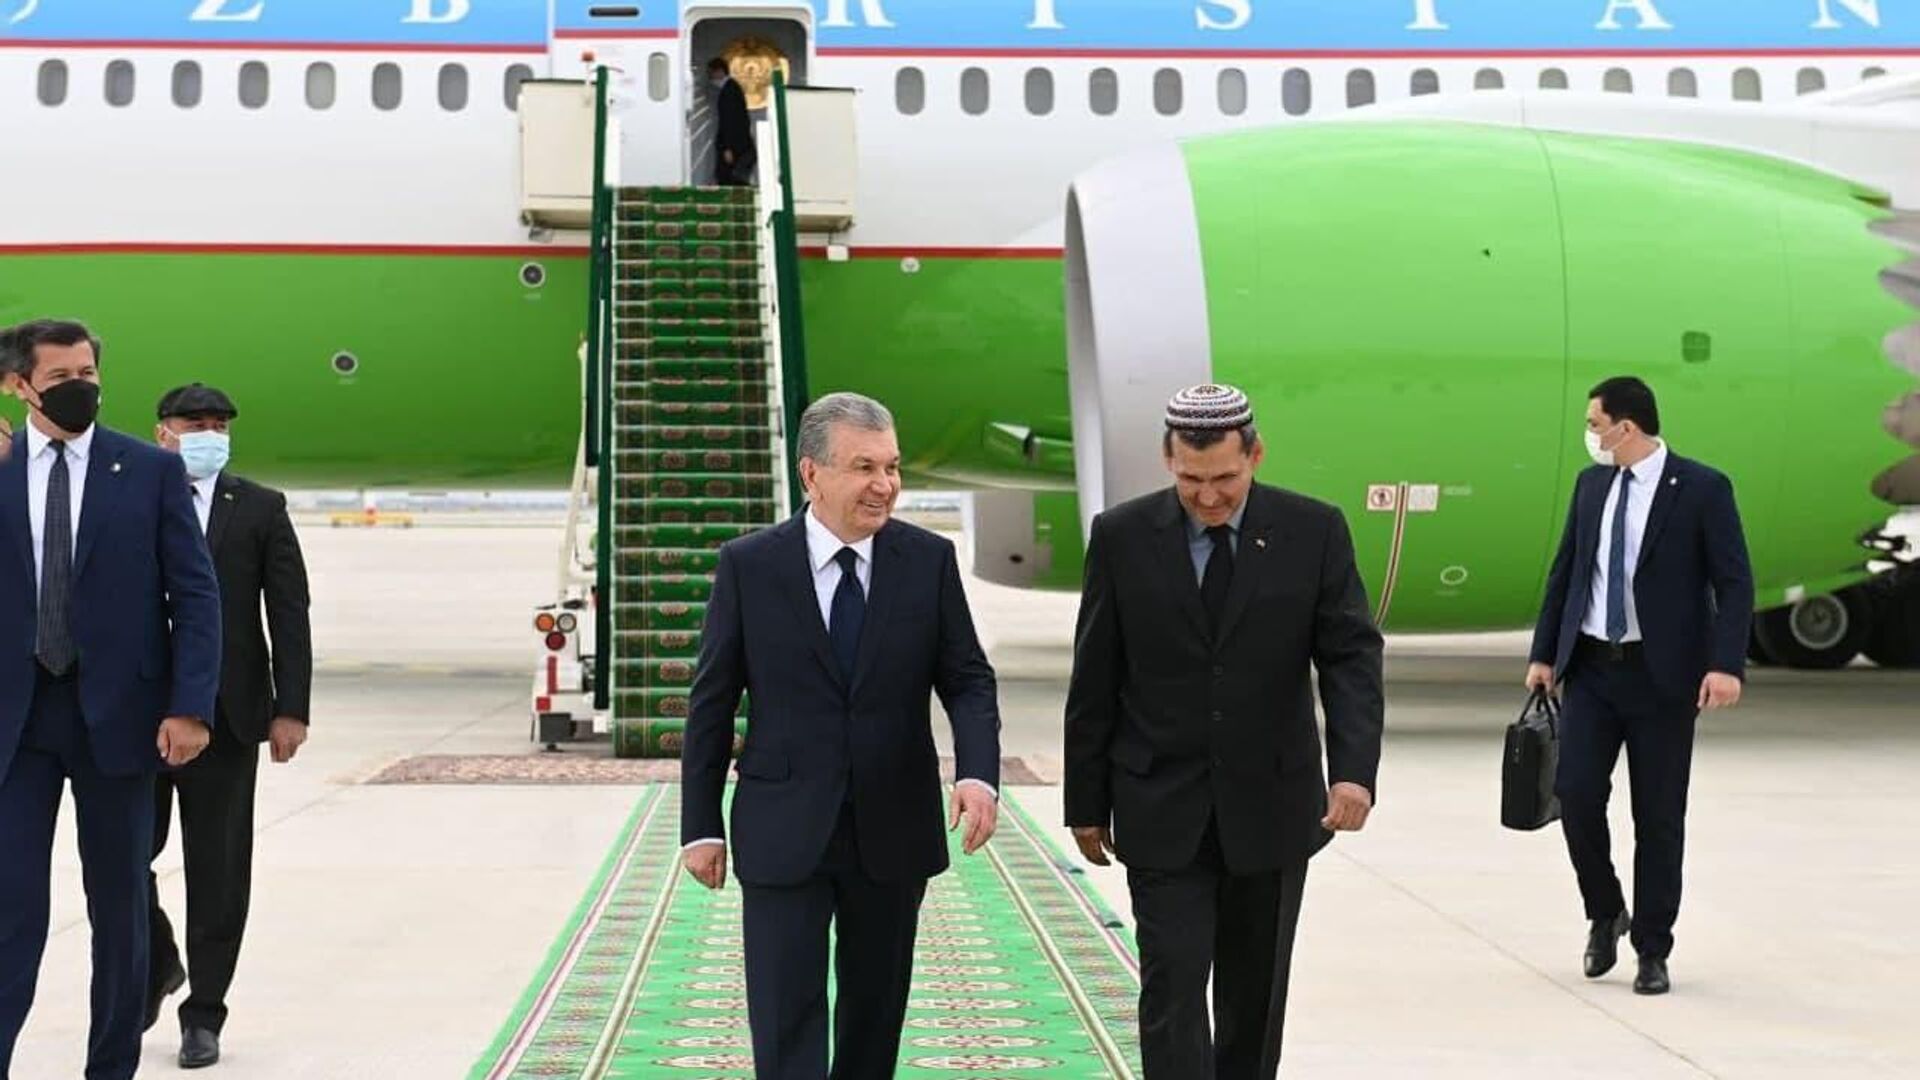 Мирзиёев прибыл в Туркменистан с рабочим визитом 29 апреля 2021 года - Sputnik Узбекистан, 1920, 29.04.2021